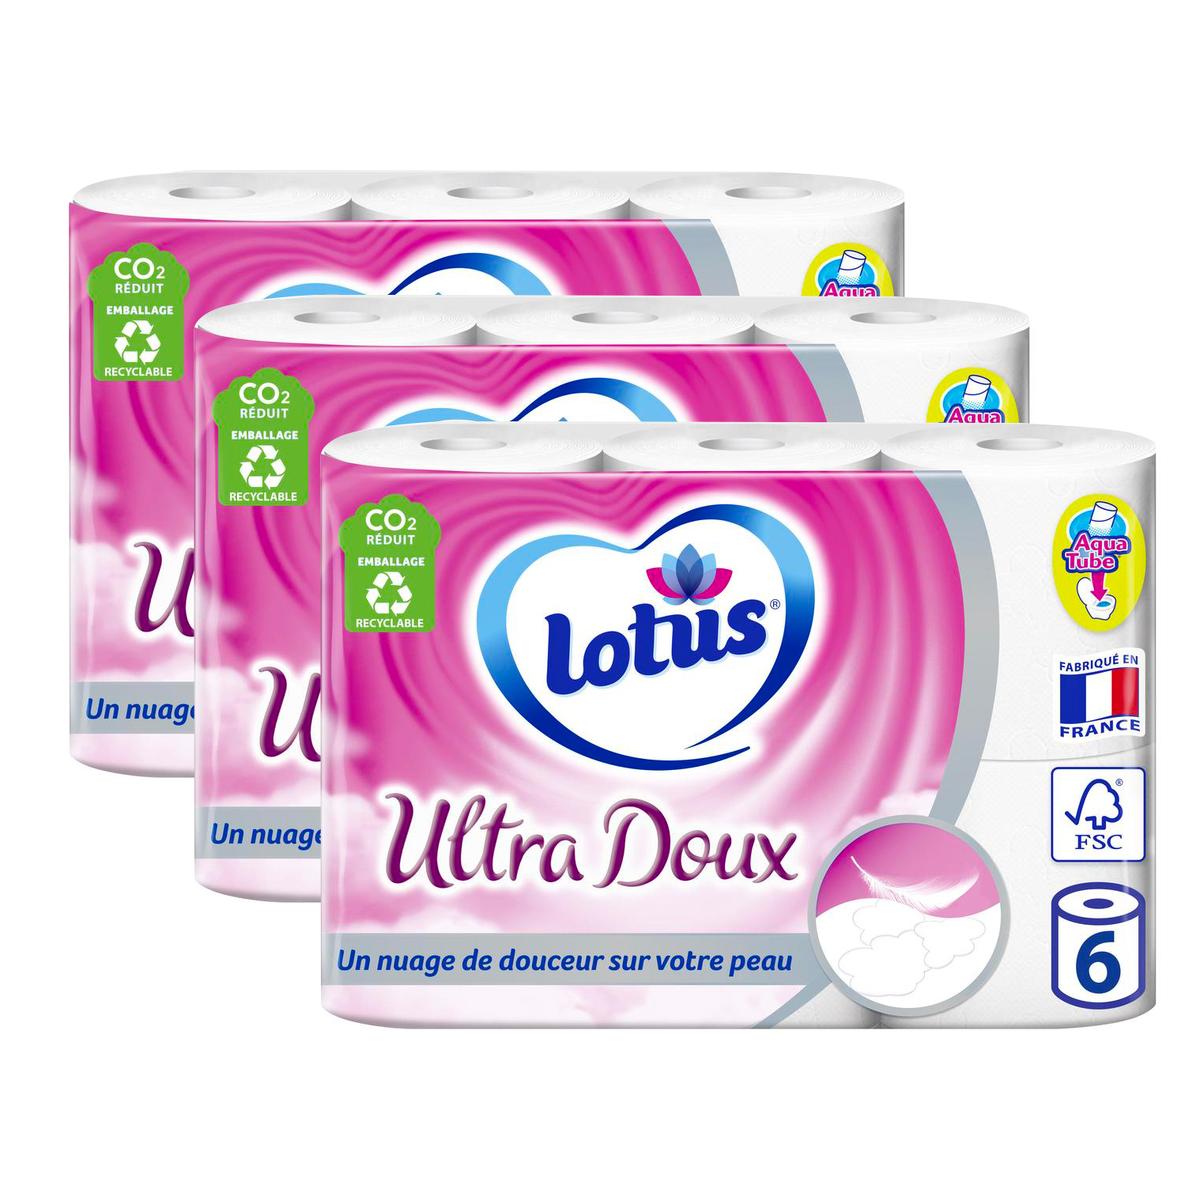 Lotus Papier toilette humide pure Avis